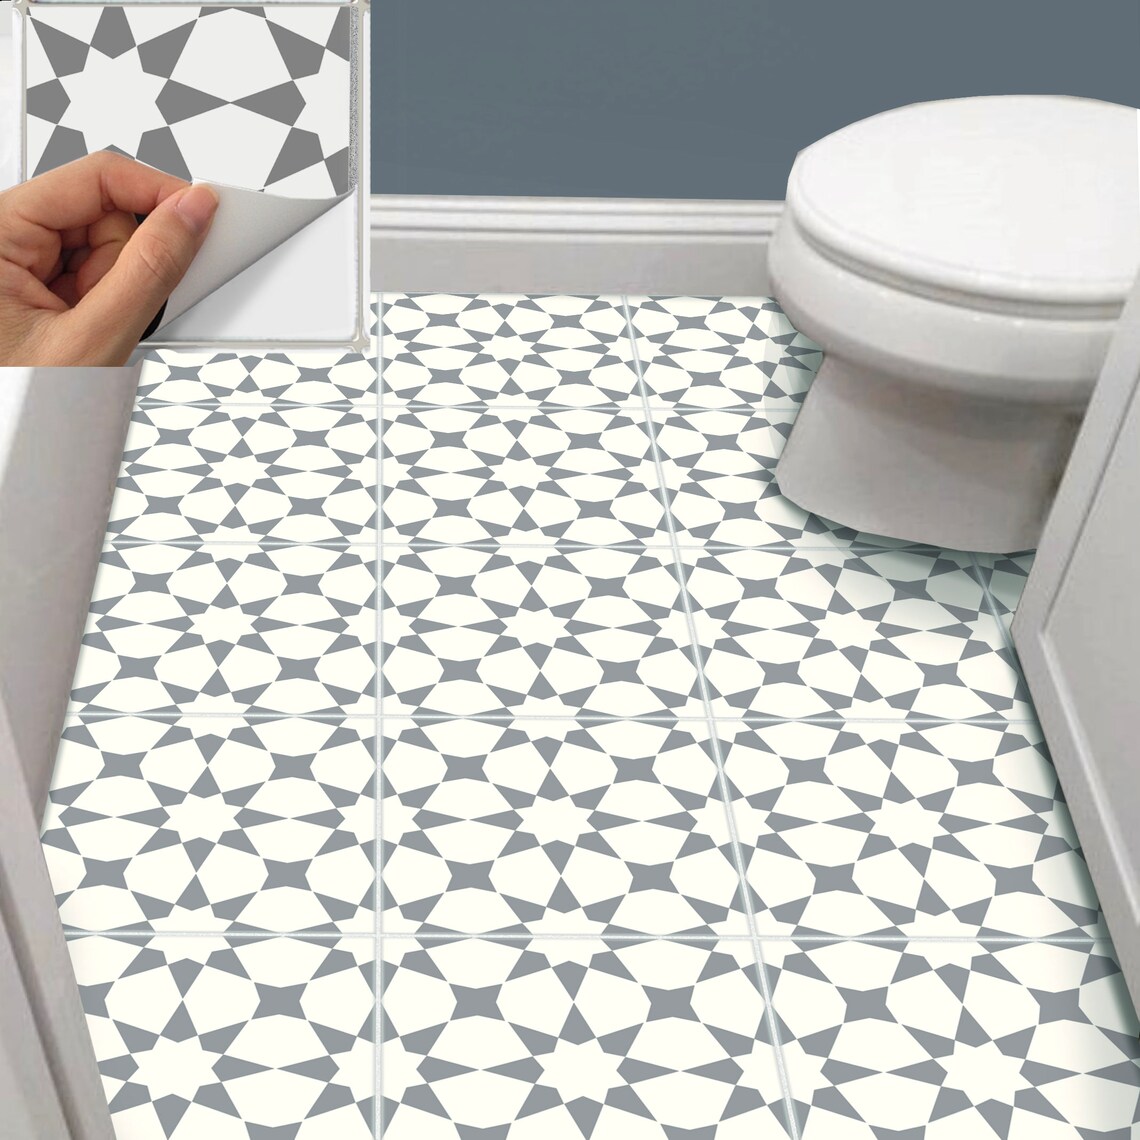 Tile Sticker Backsplash Kitchen Bath Floor Wall Waterproof - Etsy